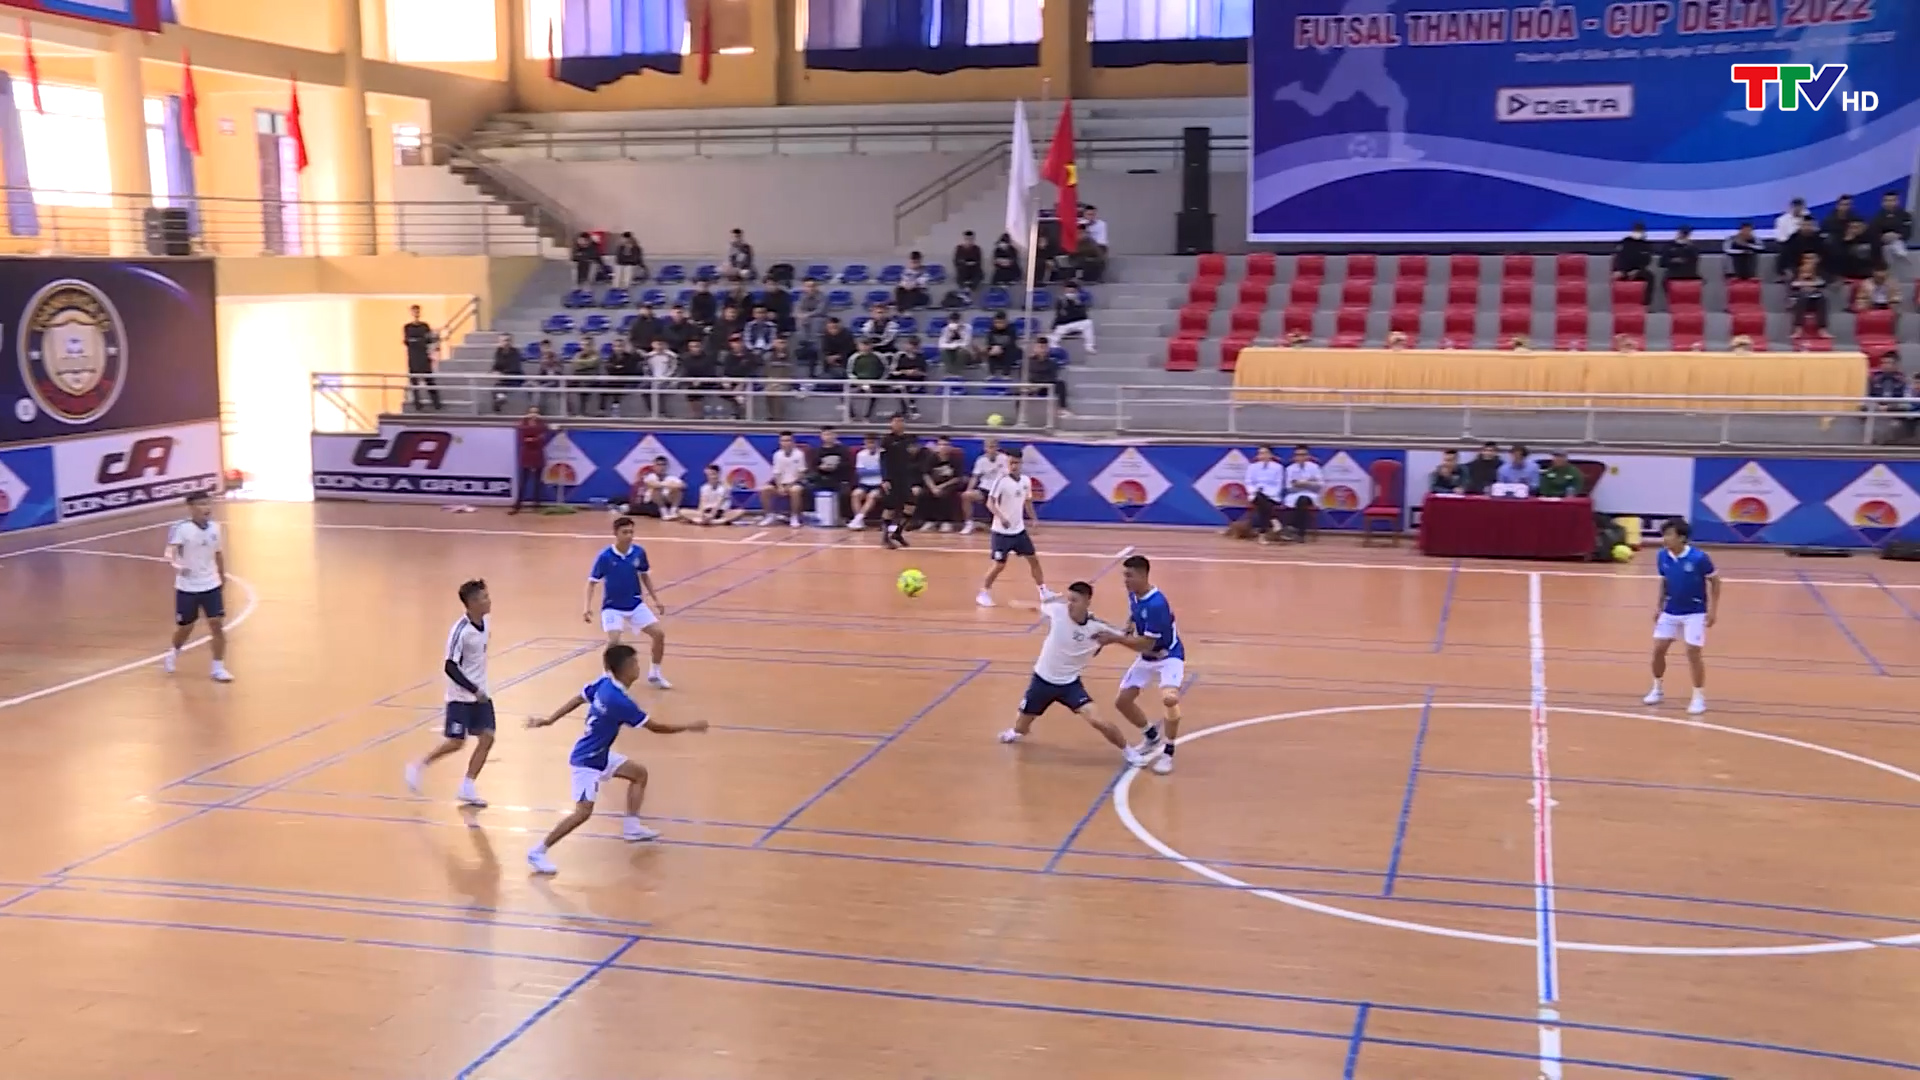 Khai mạc Giải bóng đá Futsal Thanh Hóa - Cup Delta năm 2022 - Ảnh 3.